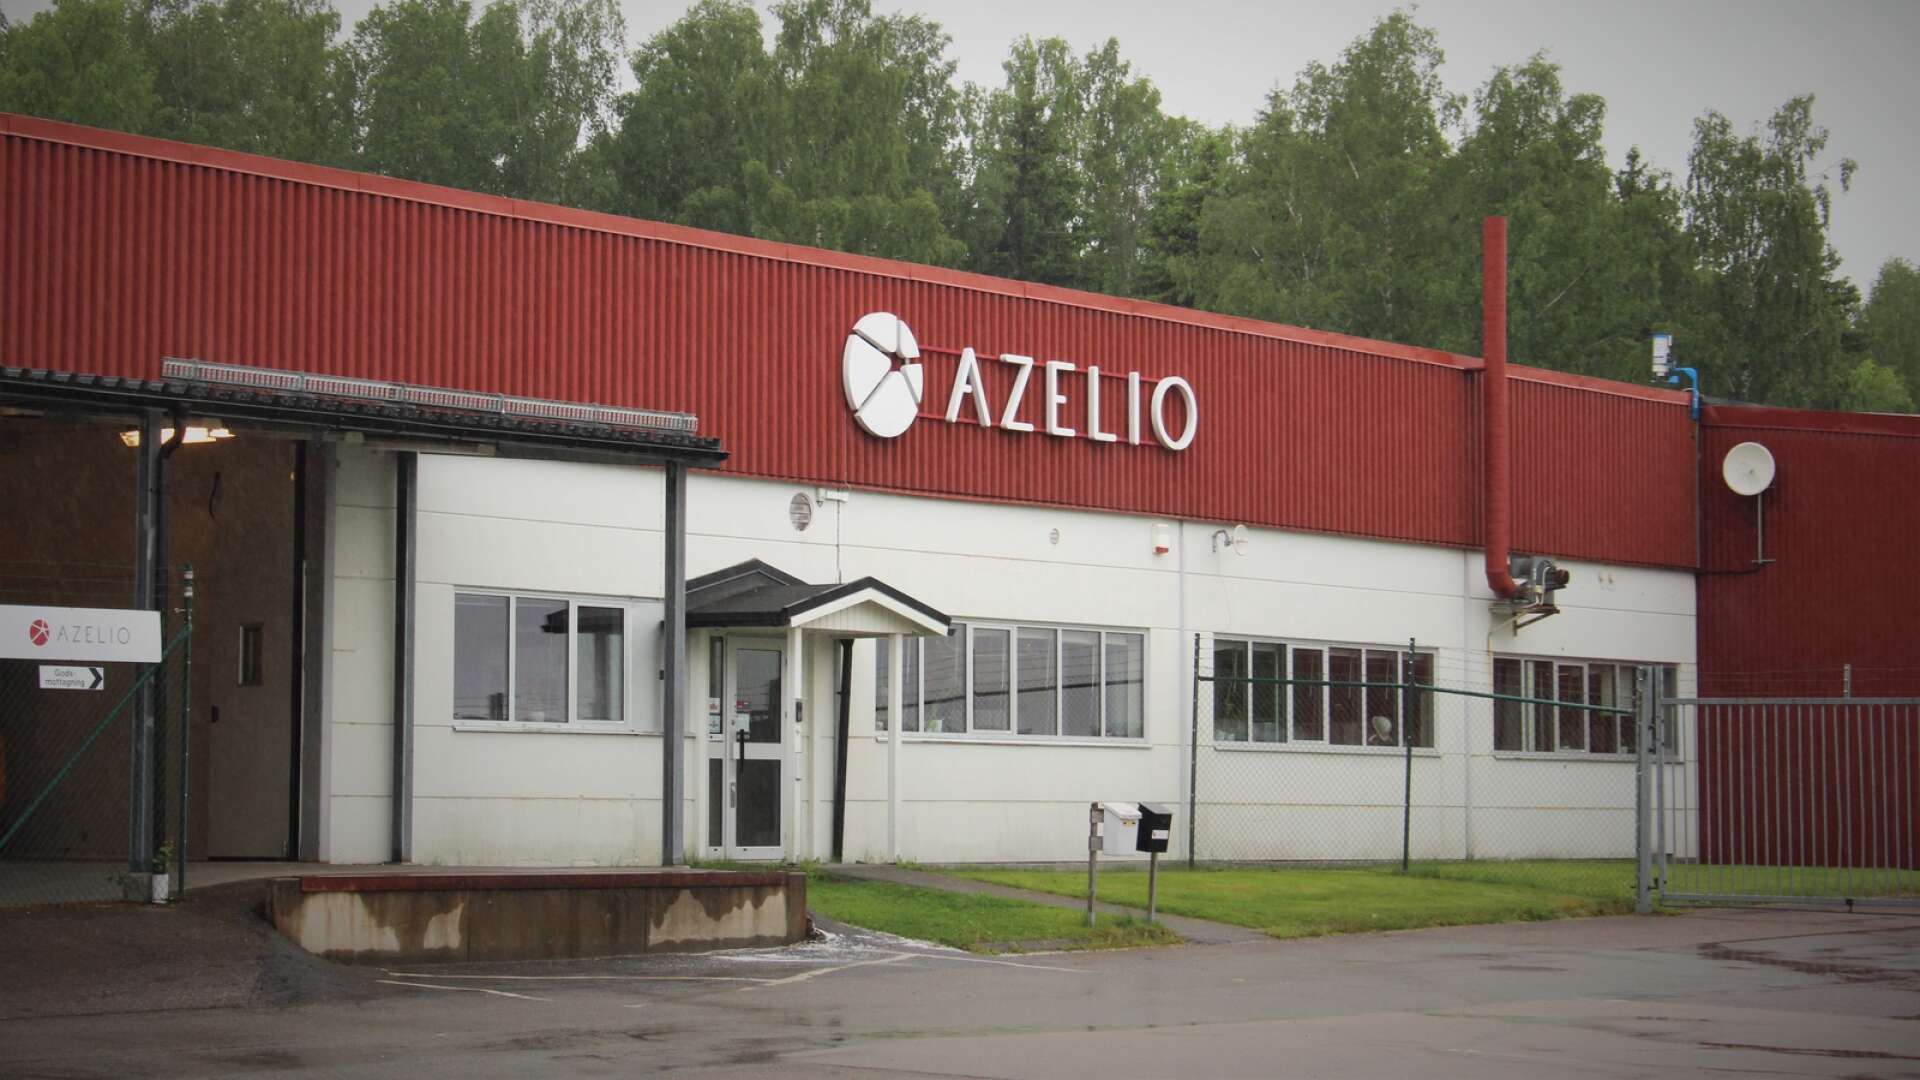 Det senaste året har mycket handlat om nedskärningar, varsel och behov av nytt kapital för Azelio AB. Men nu gläds företaget åt en positiv valideringsrapport från det ledande certifieringsorganet Det Norske Veritas för en av sina huvudprodukter.